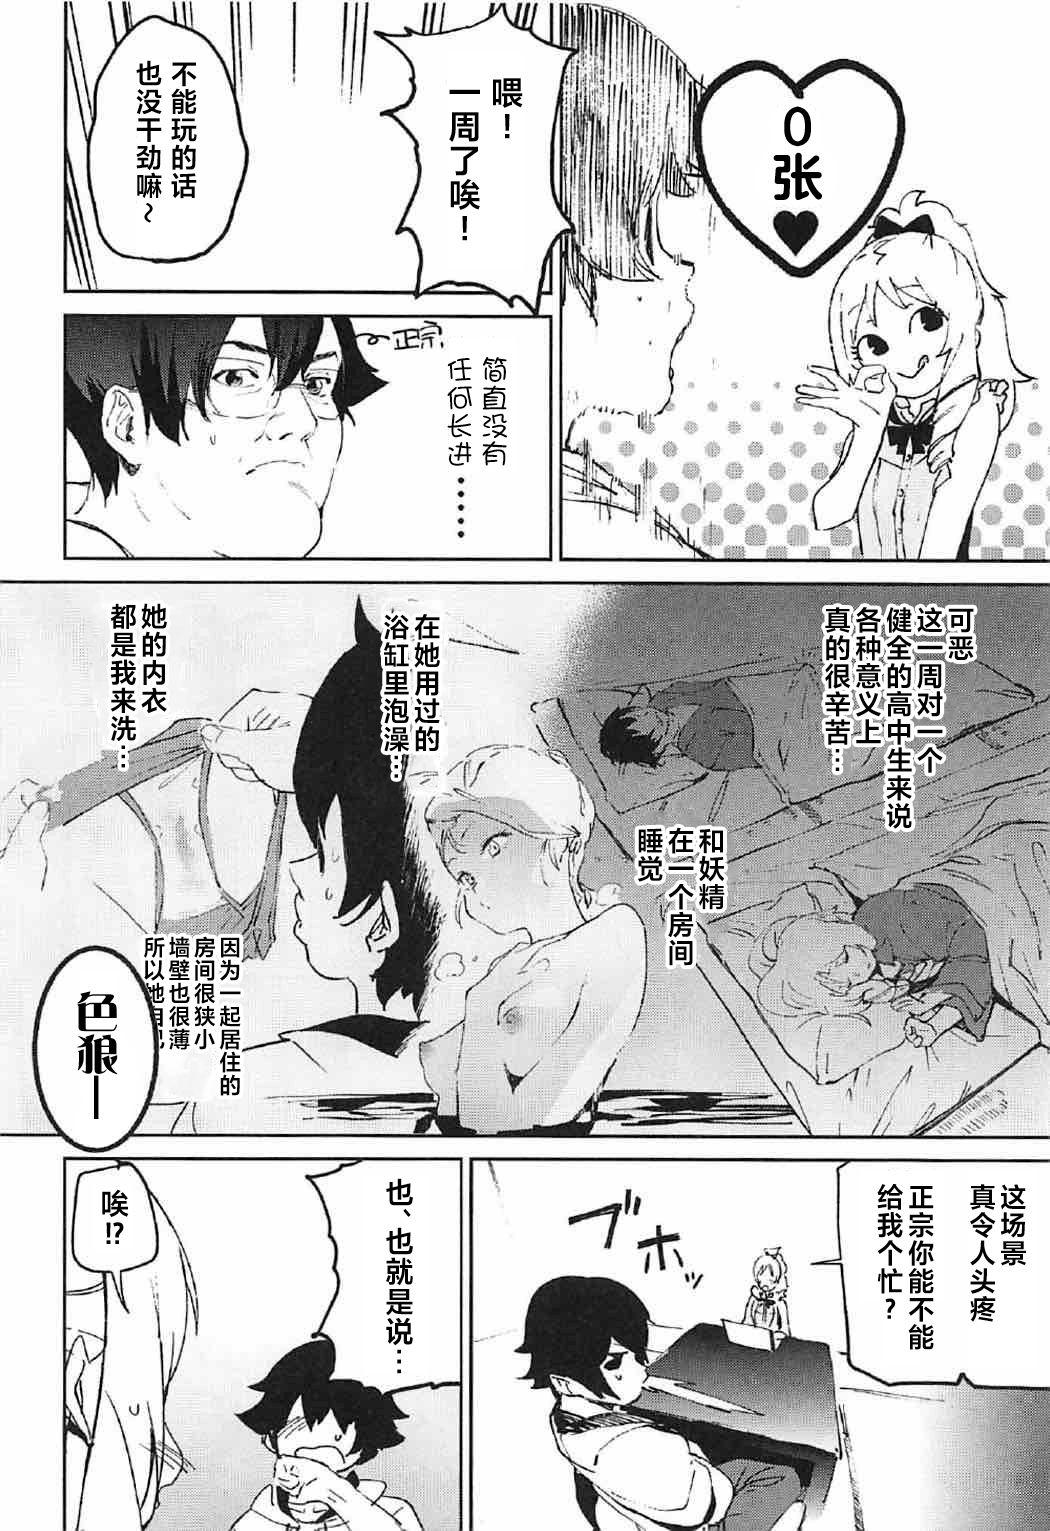 Urine Yamada Elf-sensei no Yaruki SEX Fire - Eromanga sensei Pain - Page 6